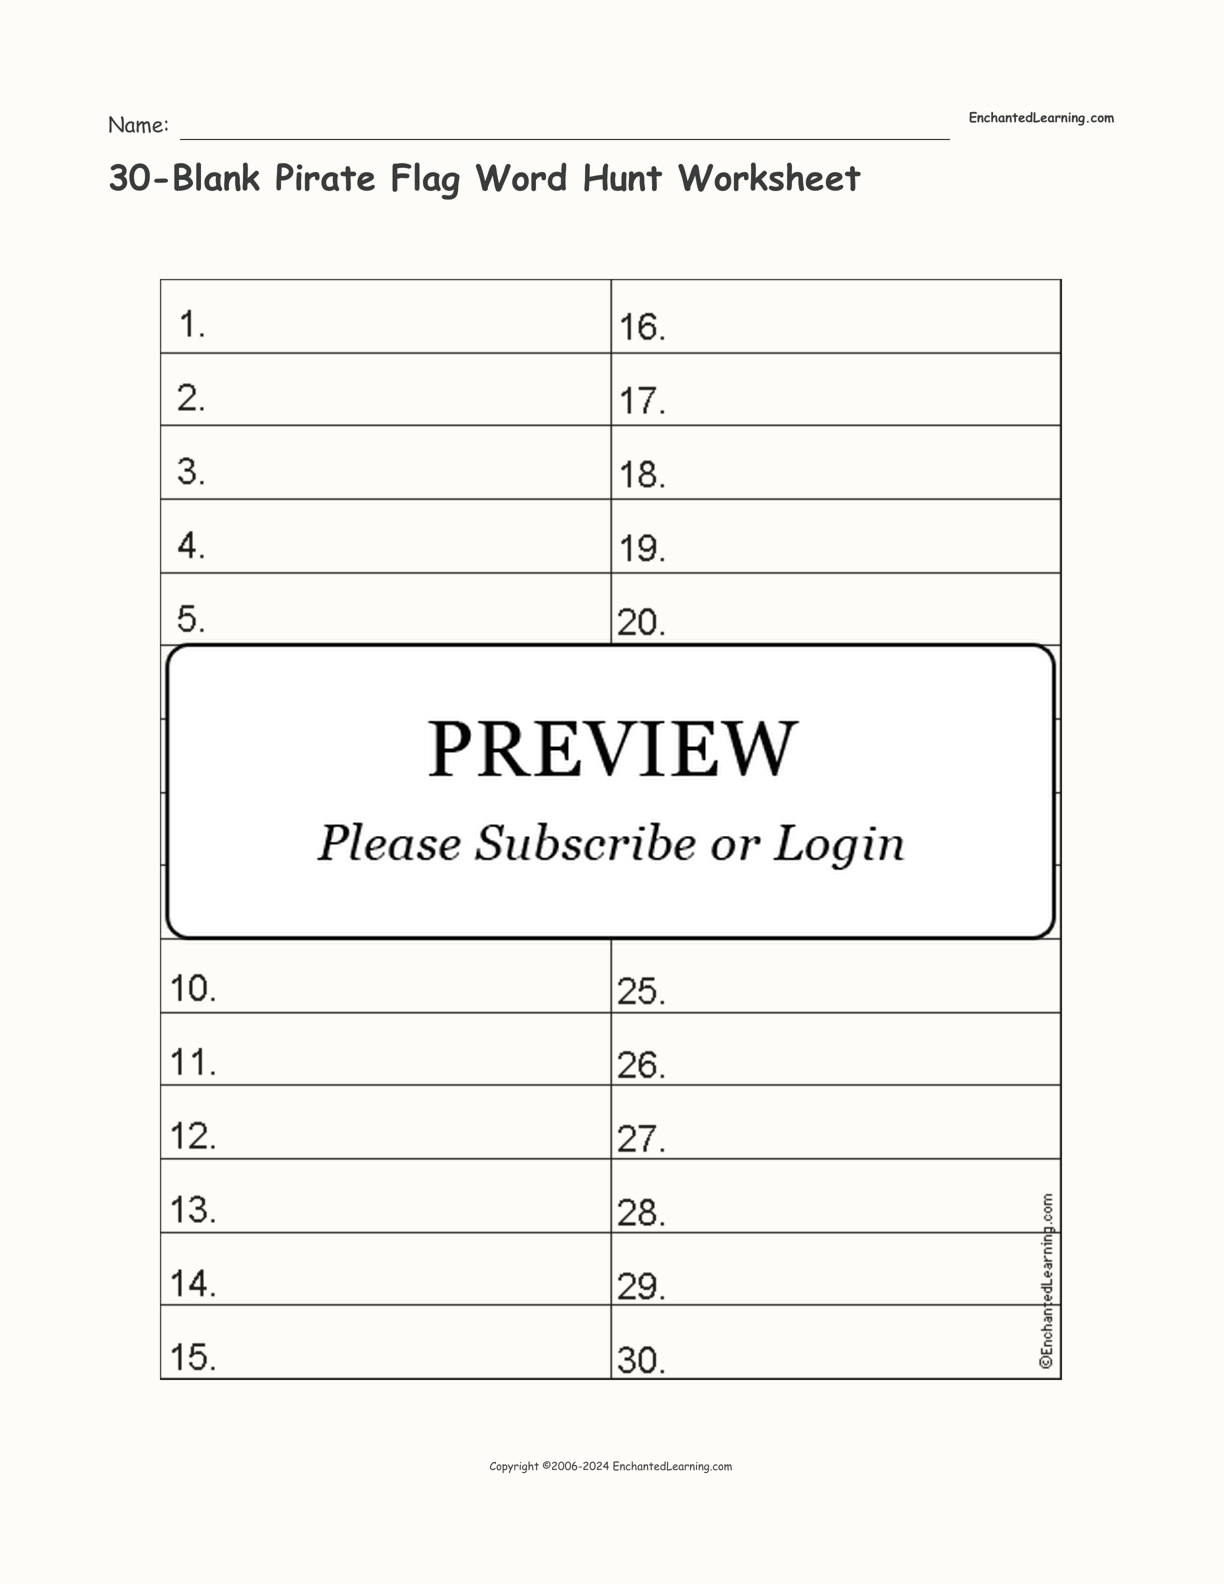 30-Blank Pirate Flag Word Hunt Worksheet interactive worksheet page 1